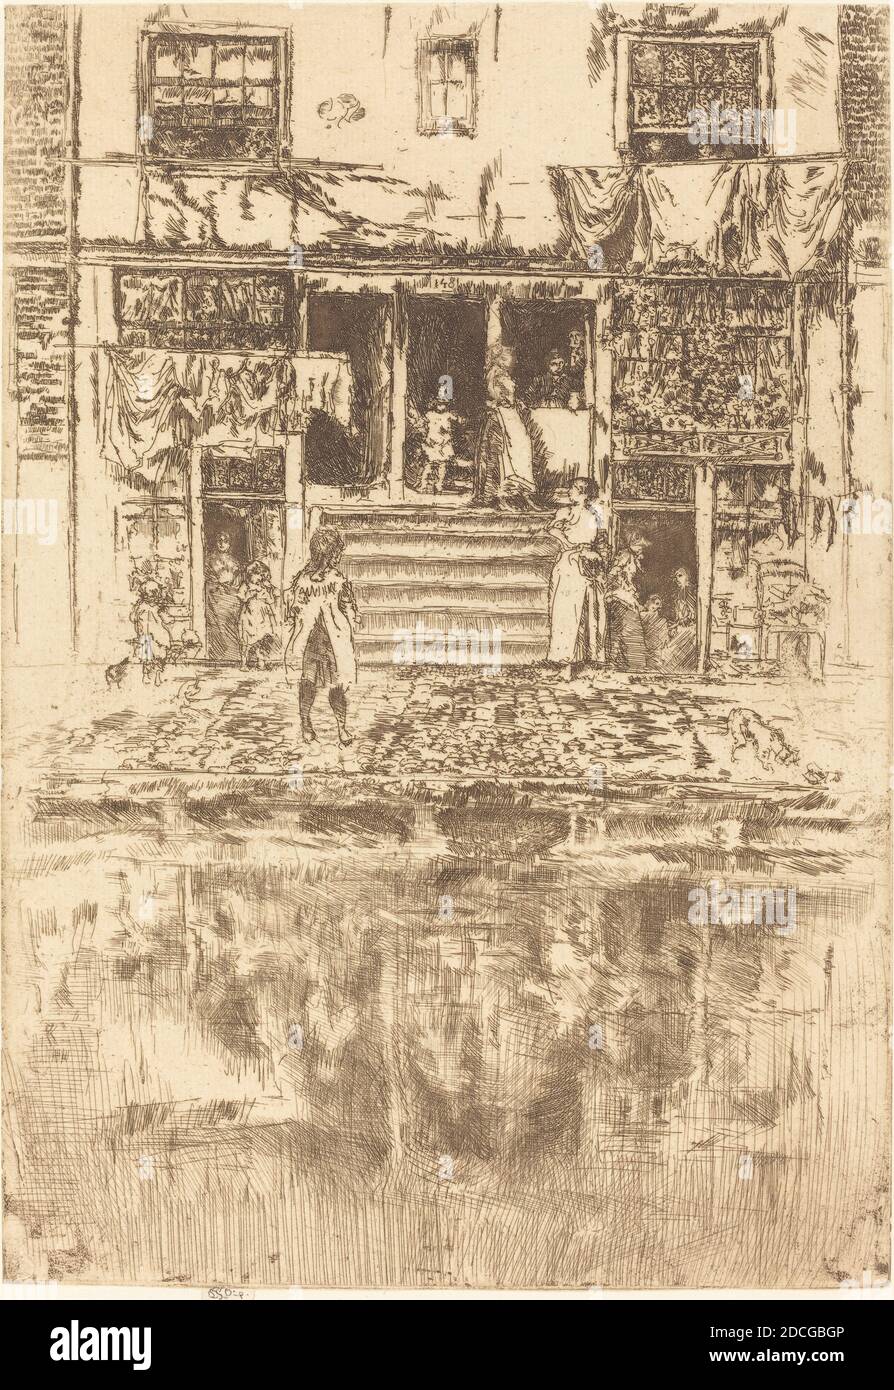 James McNeill Whistler, (artiste), cuisine américaine, 1834 - 1903, Steps, Amsterdam, 1889, gravure et point sec en marron, feuille (découpée au marquage de la plaque) : 23.7 x 16.4 cm (9 5/16 x 6 7/16 po Banque D'Images